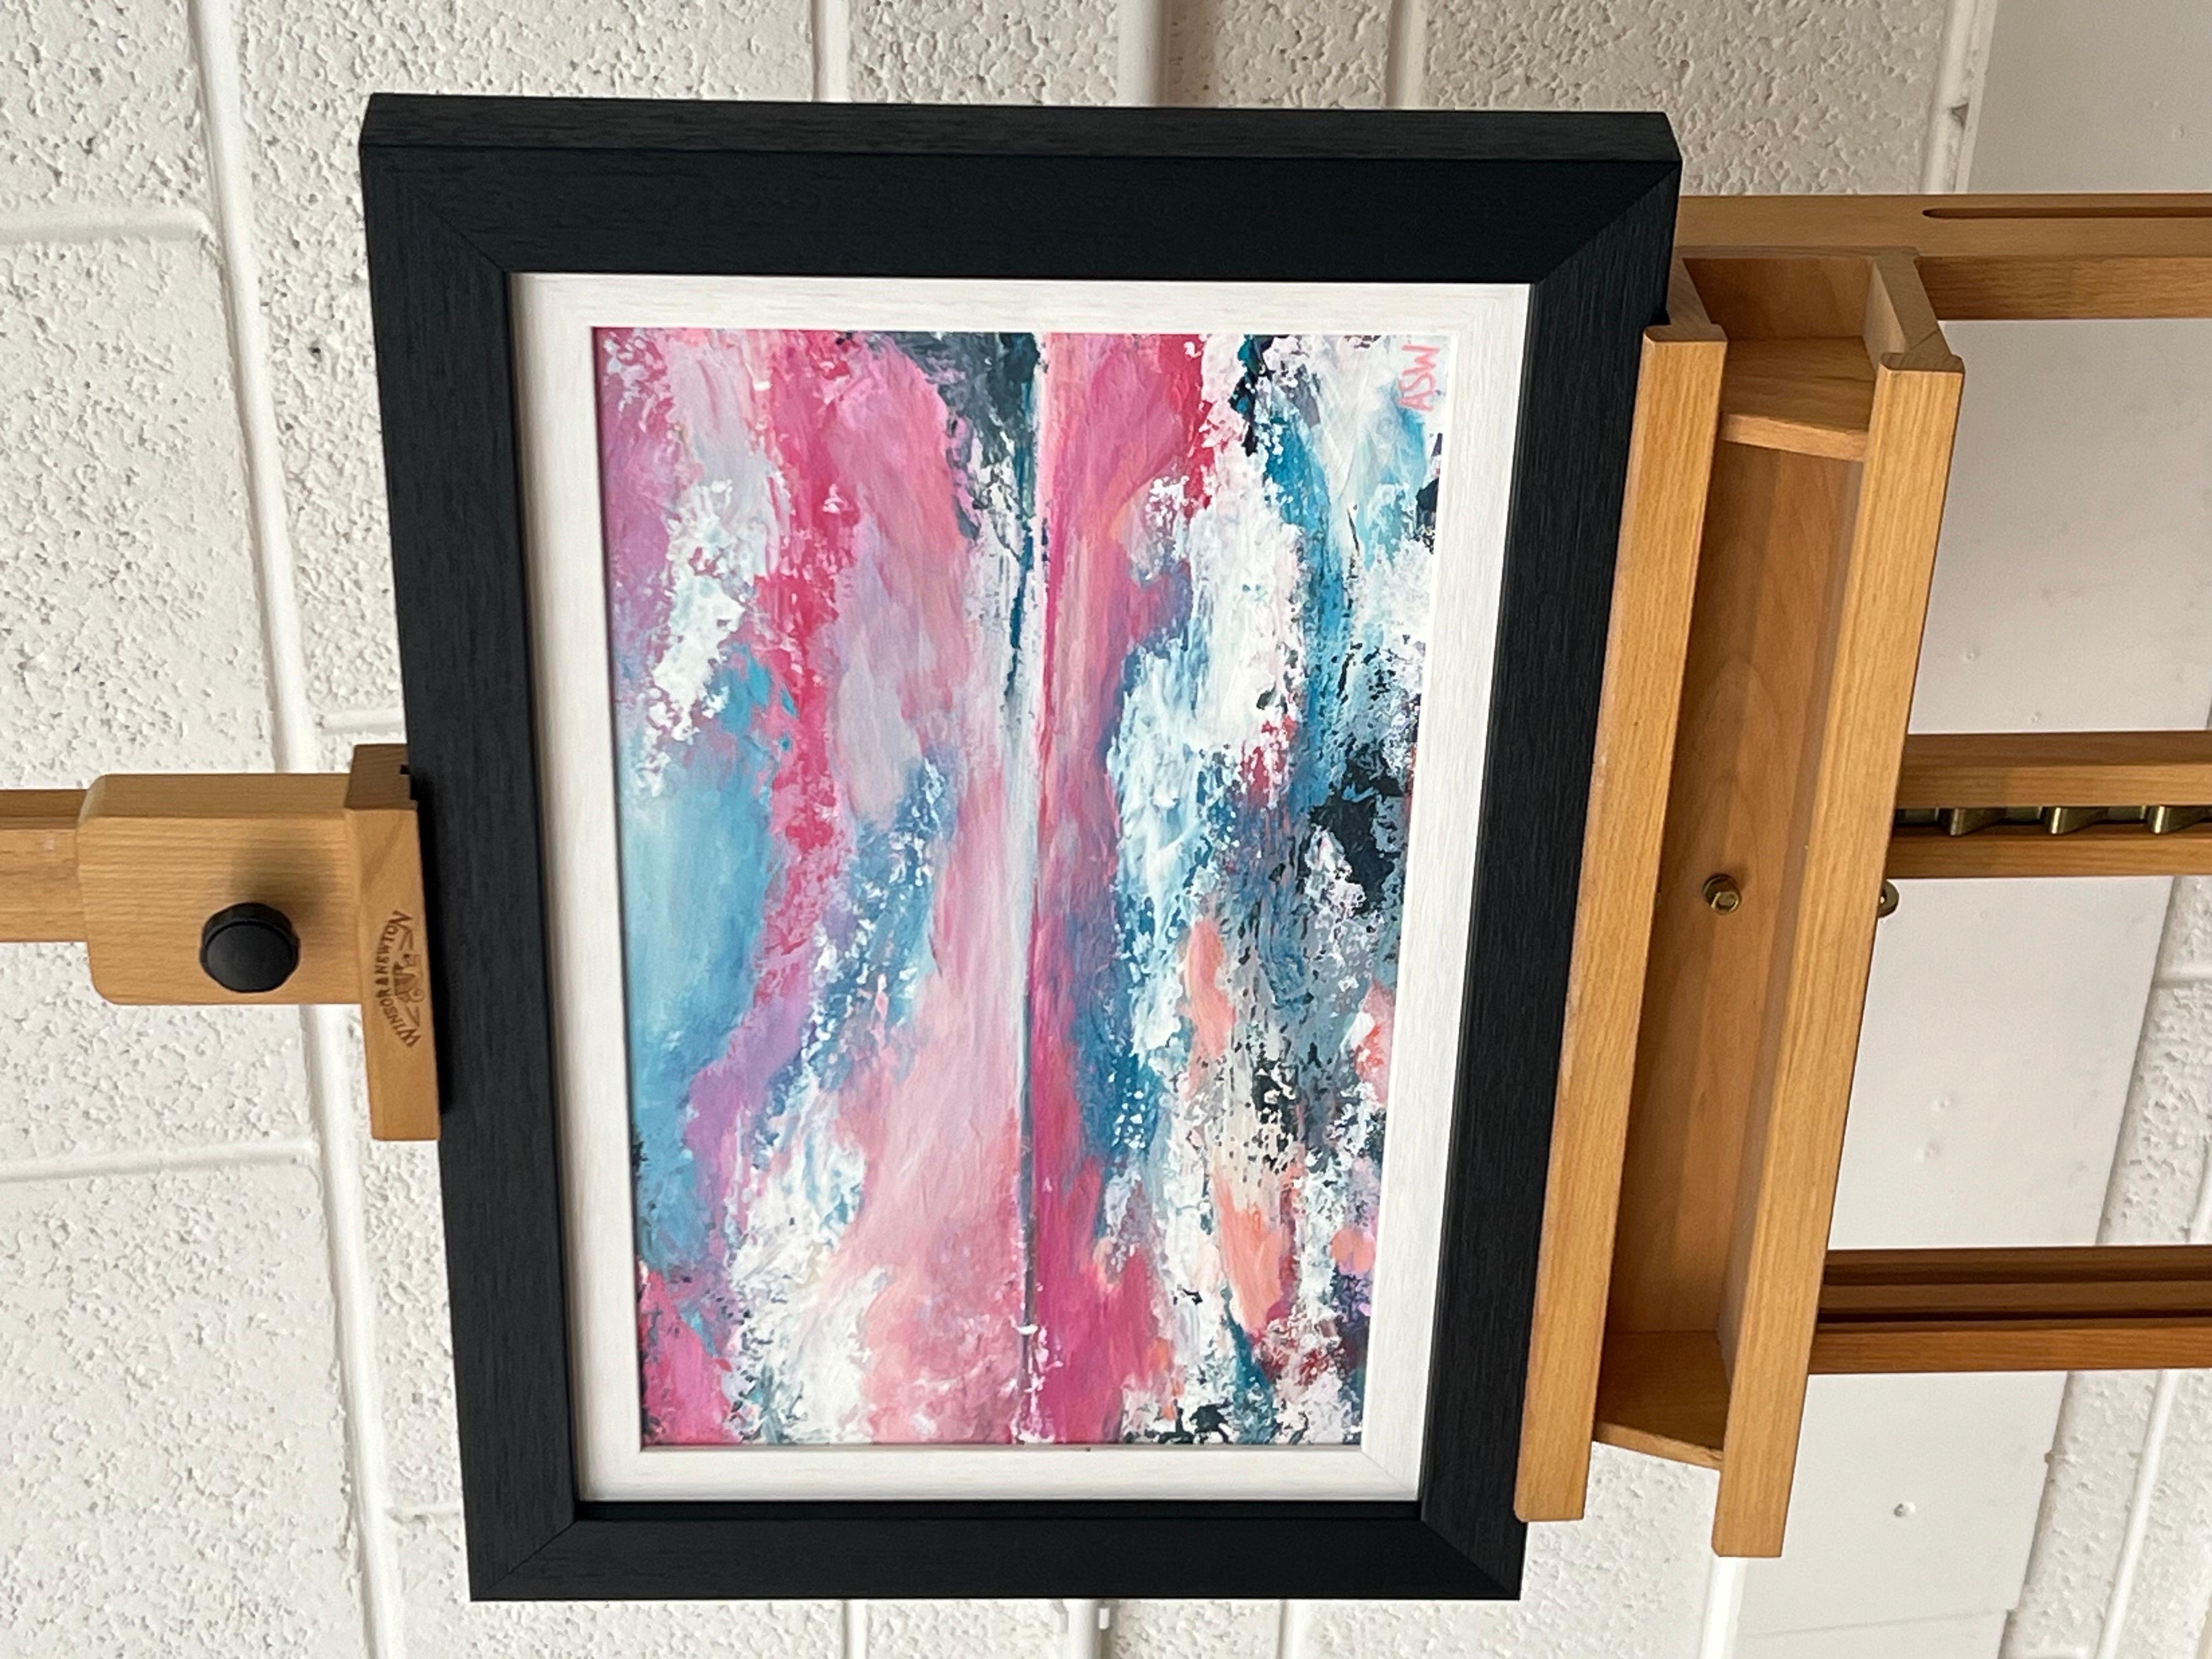 Peinture abstraite de paysage marin avec ciel rose et bleu par Angela Wakefield, peintre britannique de renom

L'œuvre d'art mesure 18 x 12 pouces
Le cadre mesure 22 x 16 pouces

Ce tableau représente un paysage marin abstrait dans des tons vibrants